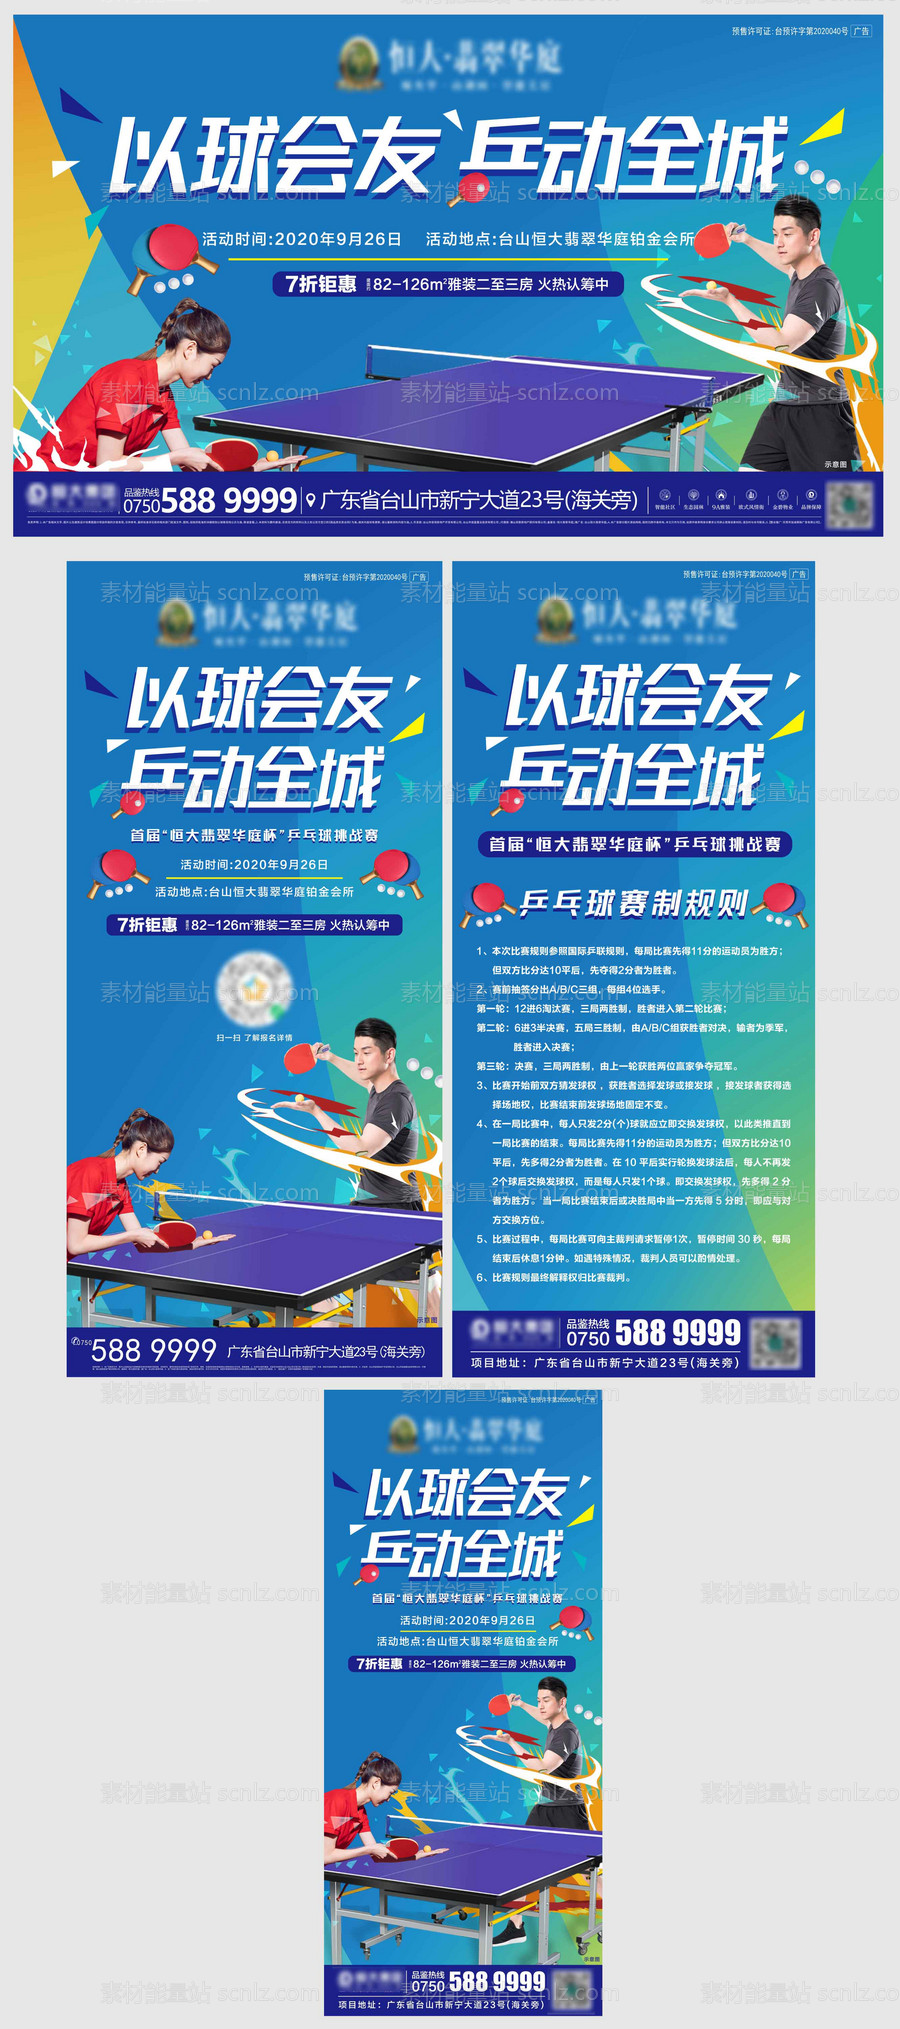 素材能量站-地产暖场活动乒乓球比赛活动系列物料